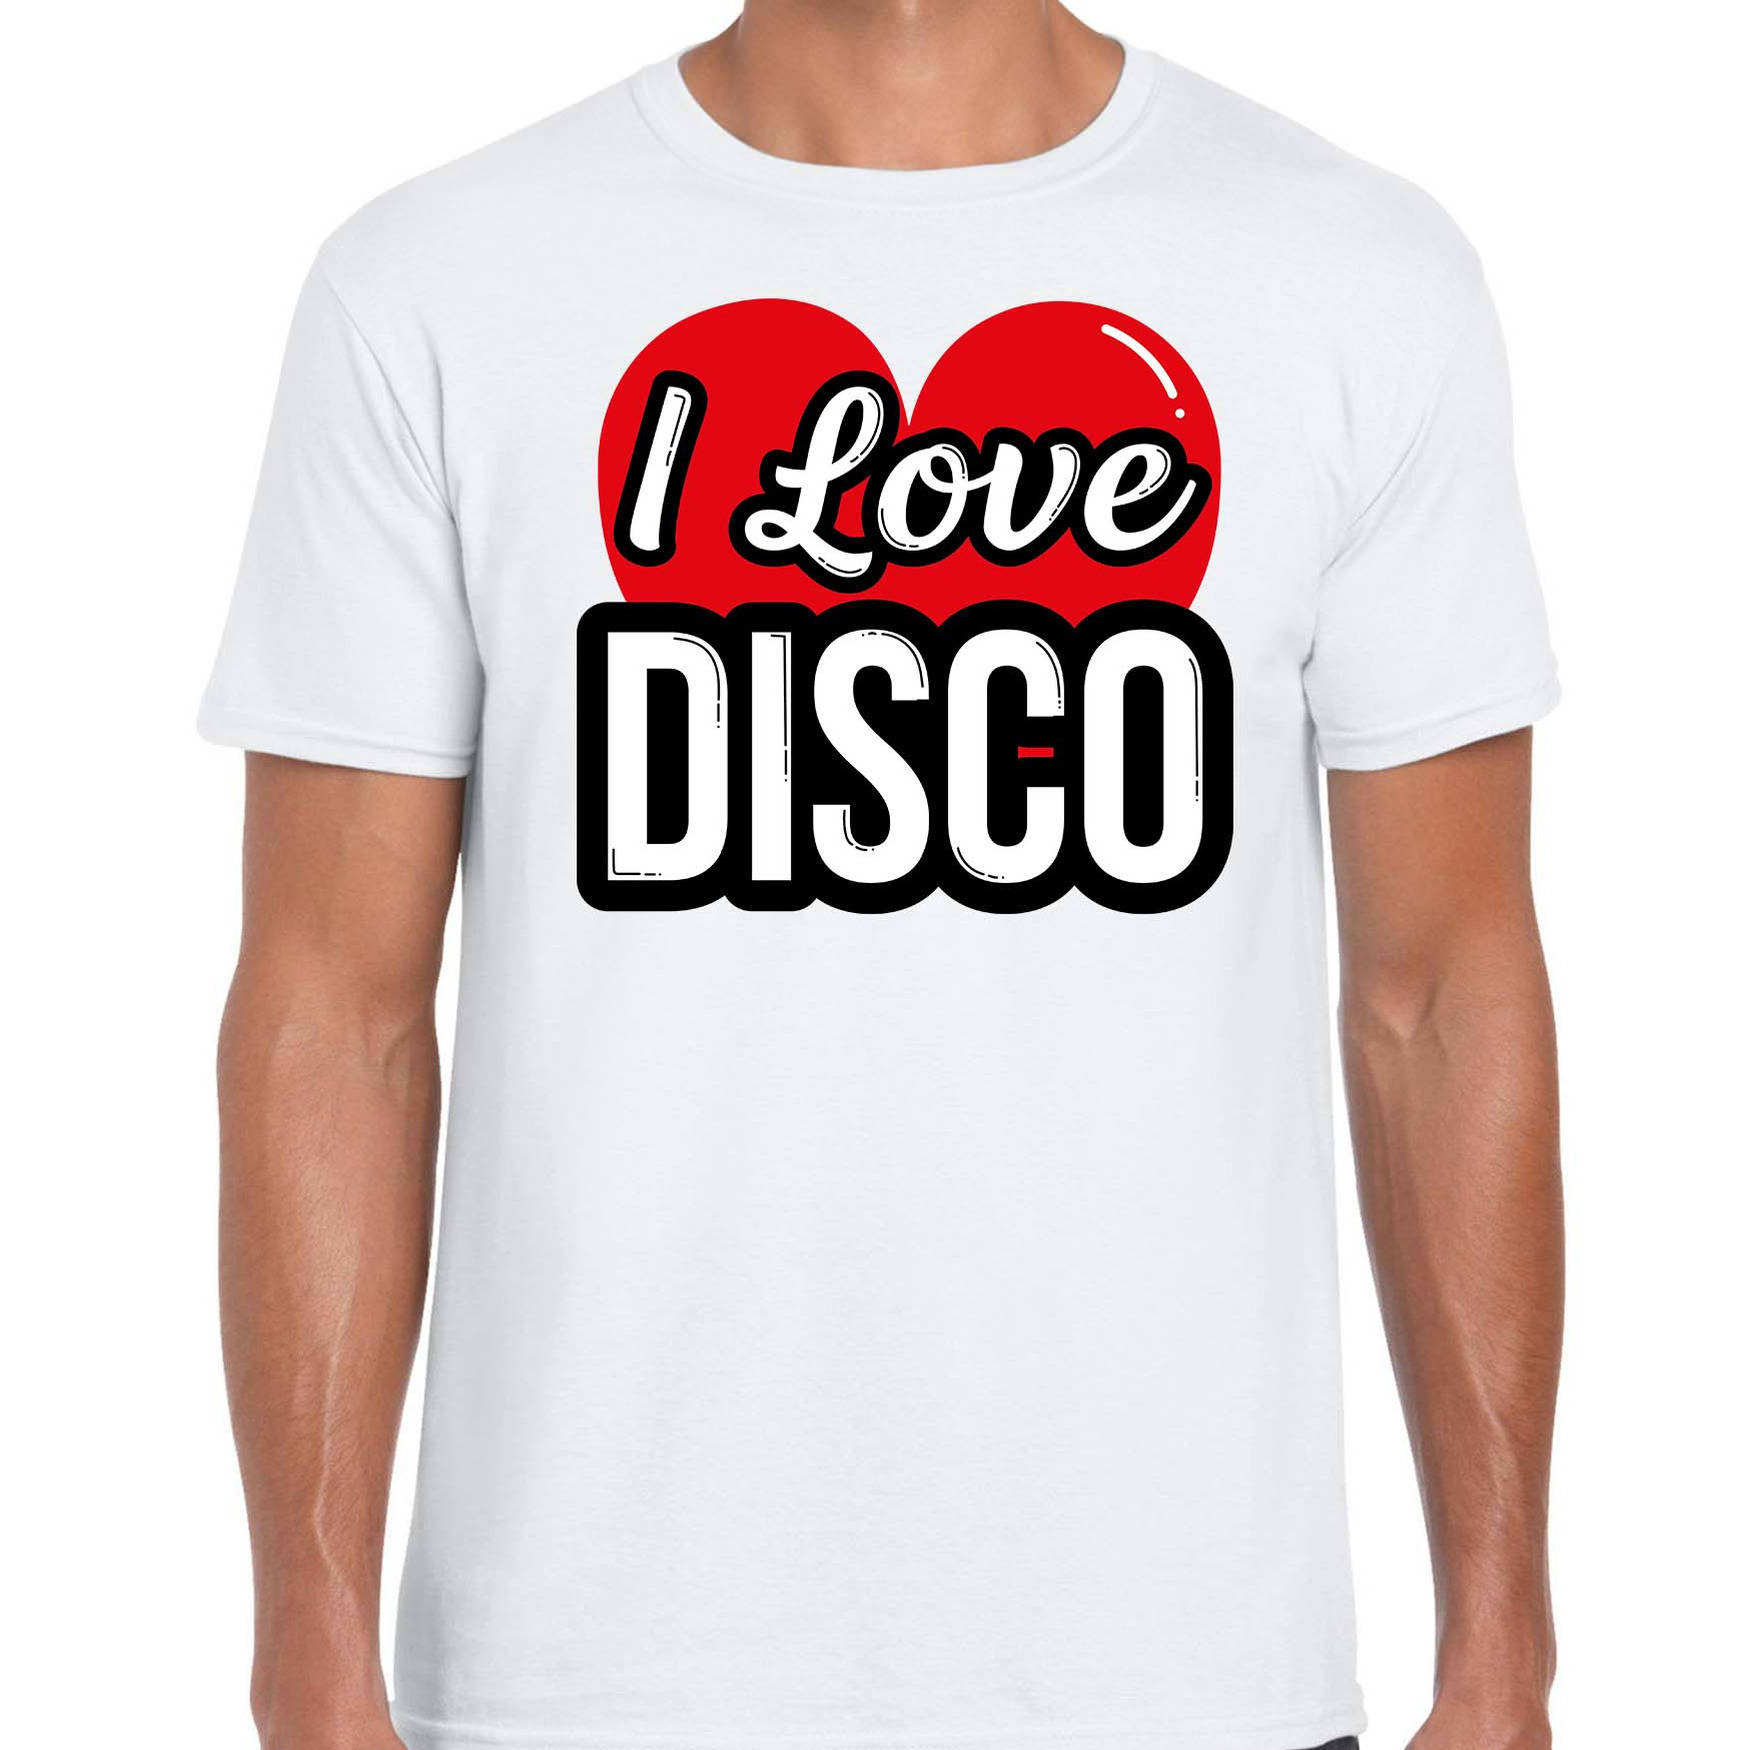 I love disco verkleed t-shirt wit voor heren Disco party verkleed outfit